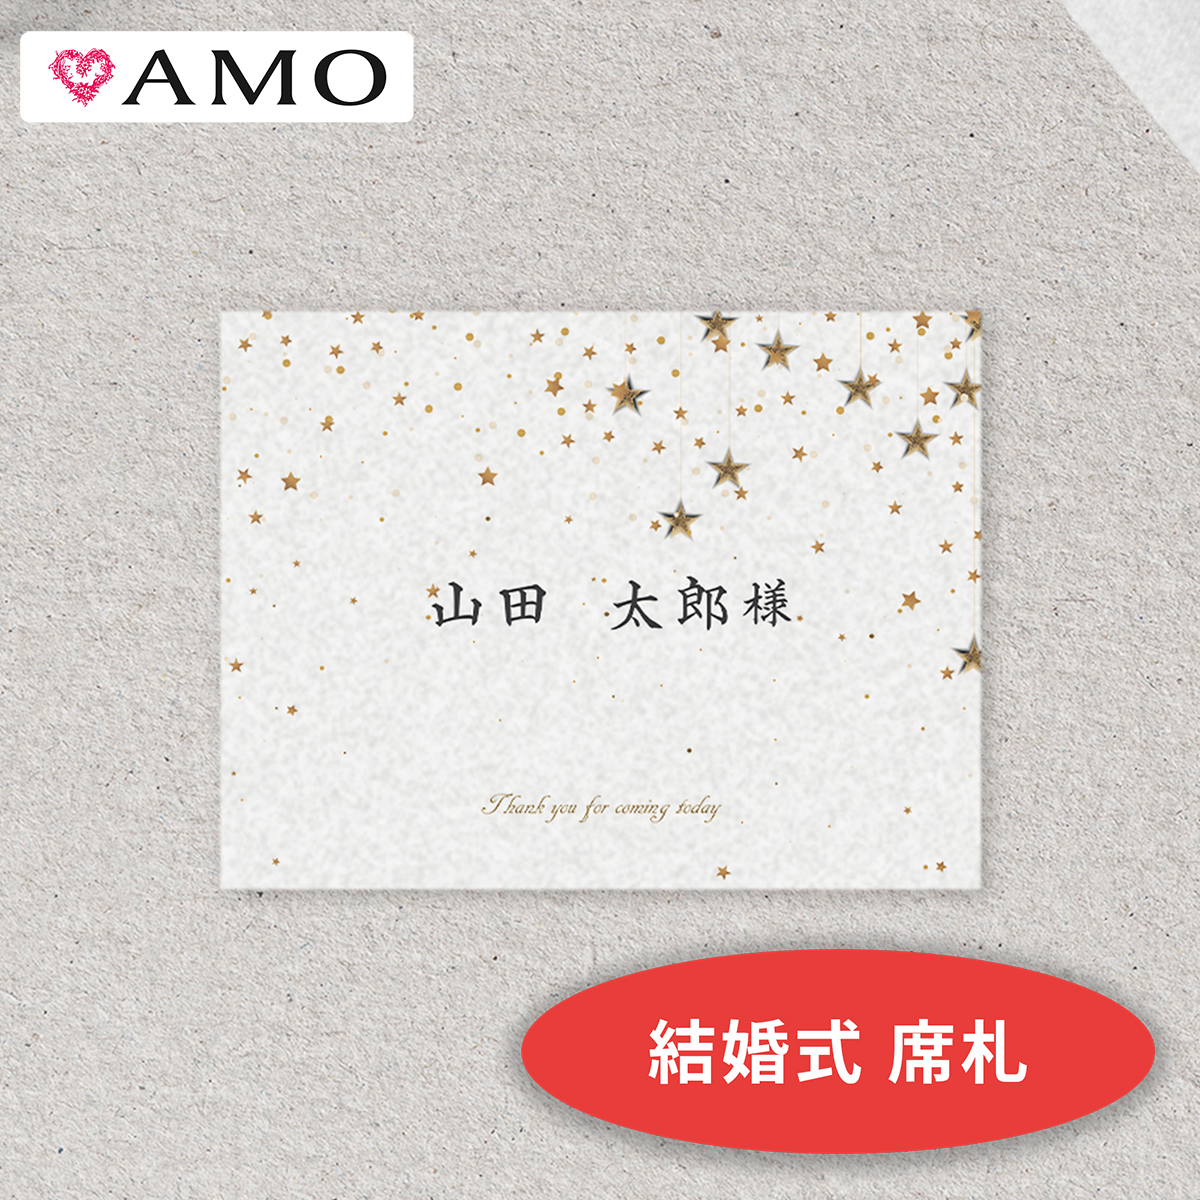 楽天市場 Amo 結婚式 席札 手作りキット 満天の星空ホワイト インクジェット対応 30部までメール便可 Amo 楽天市場店